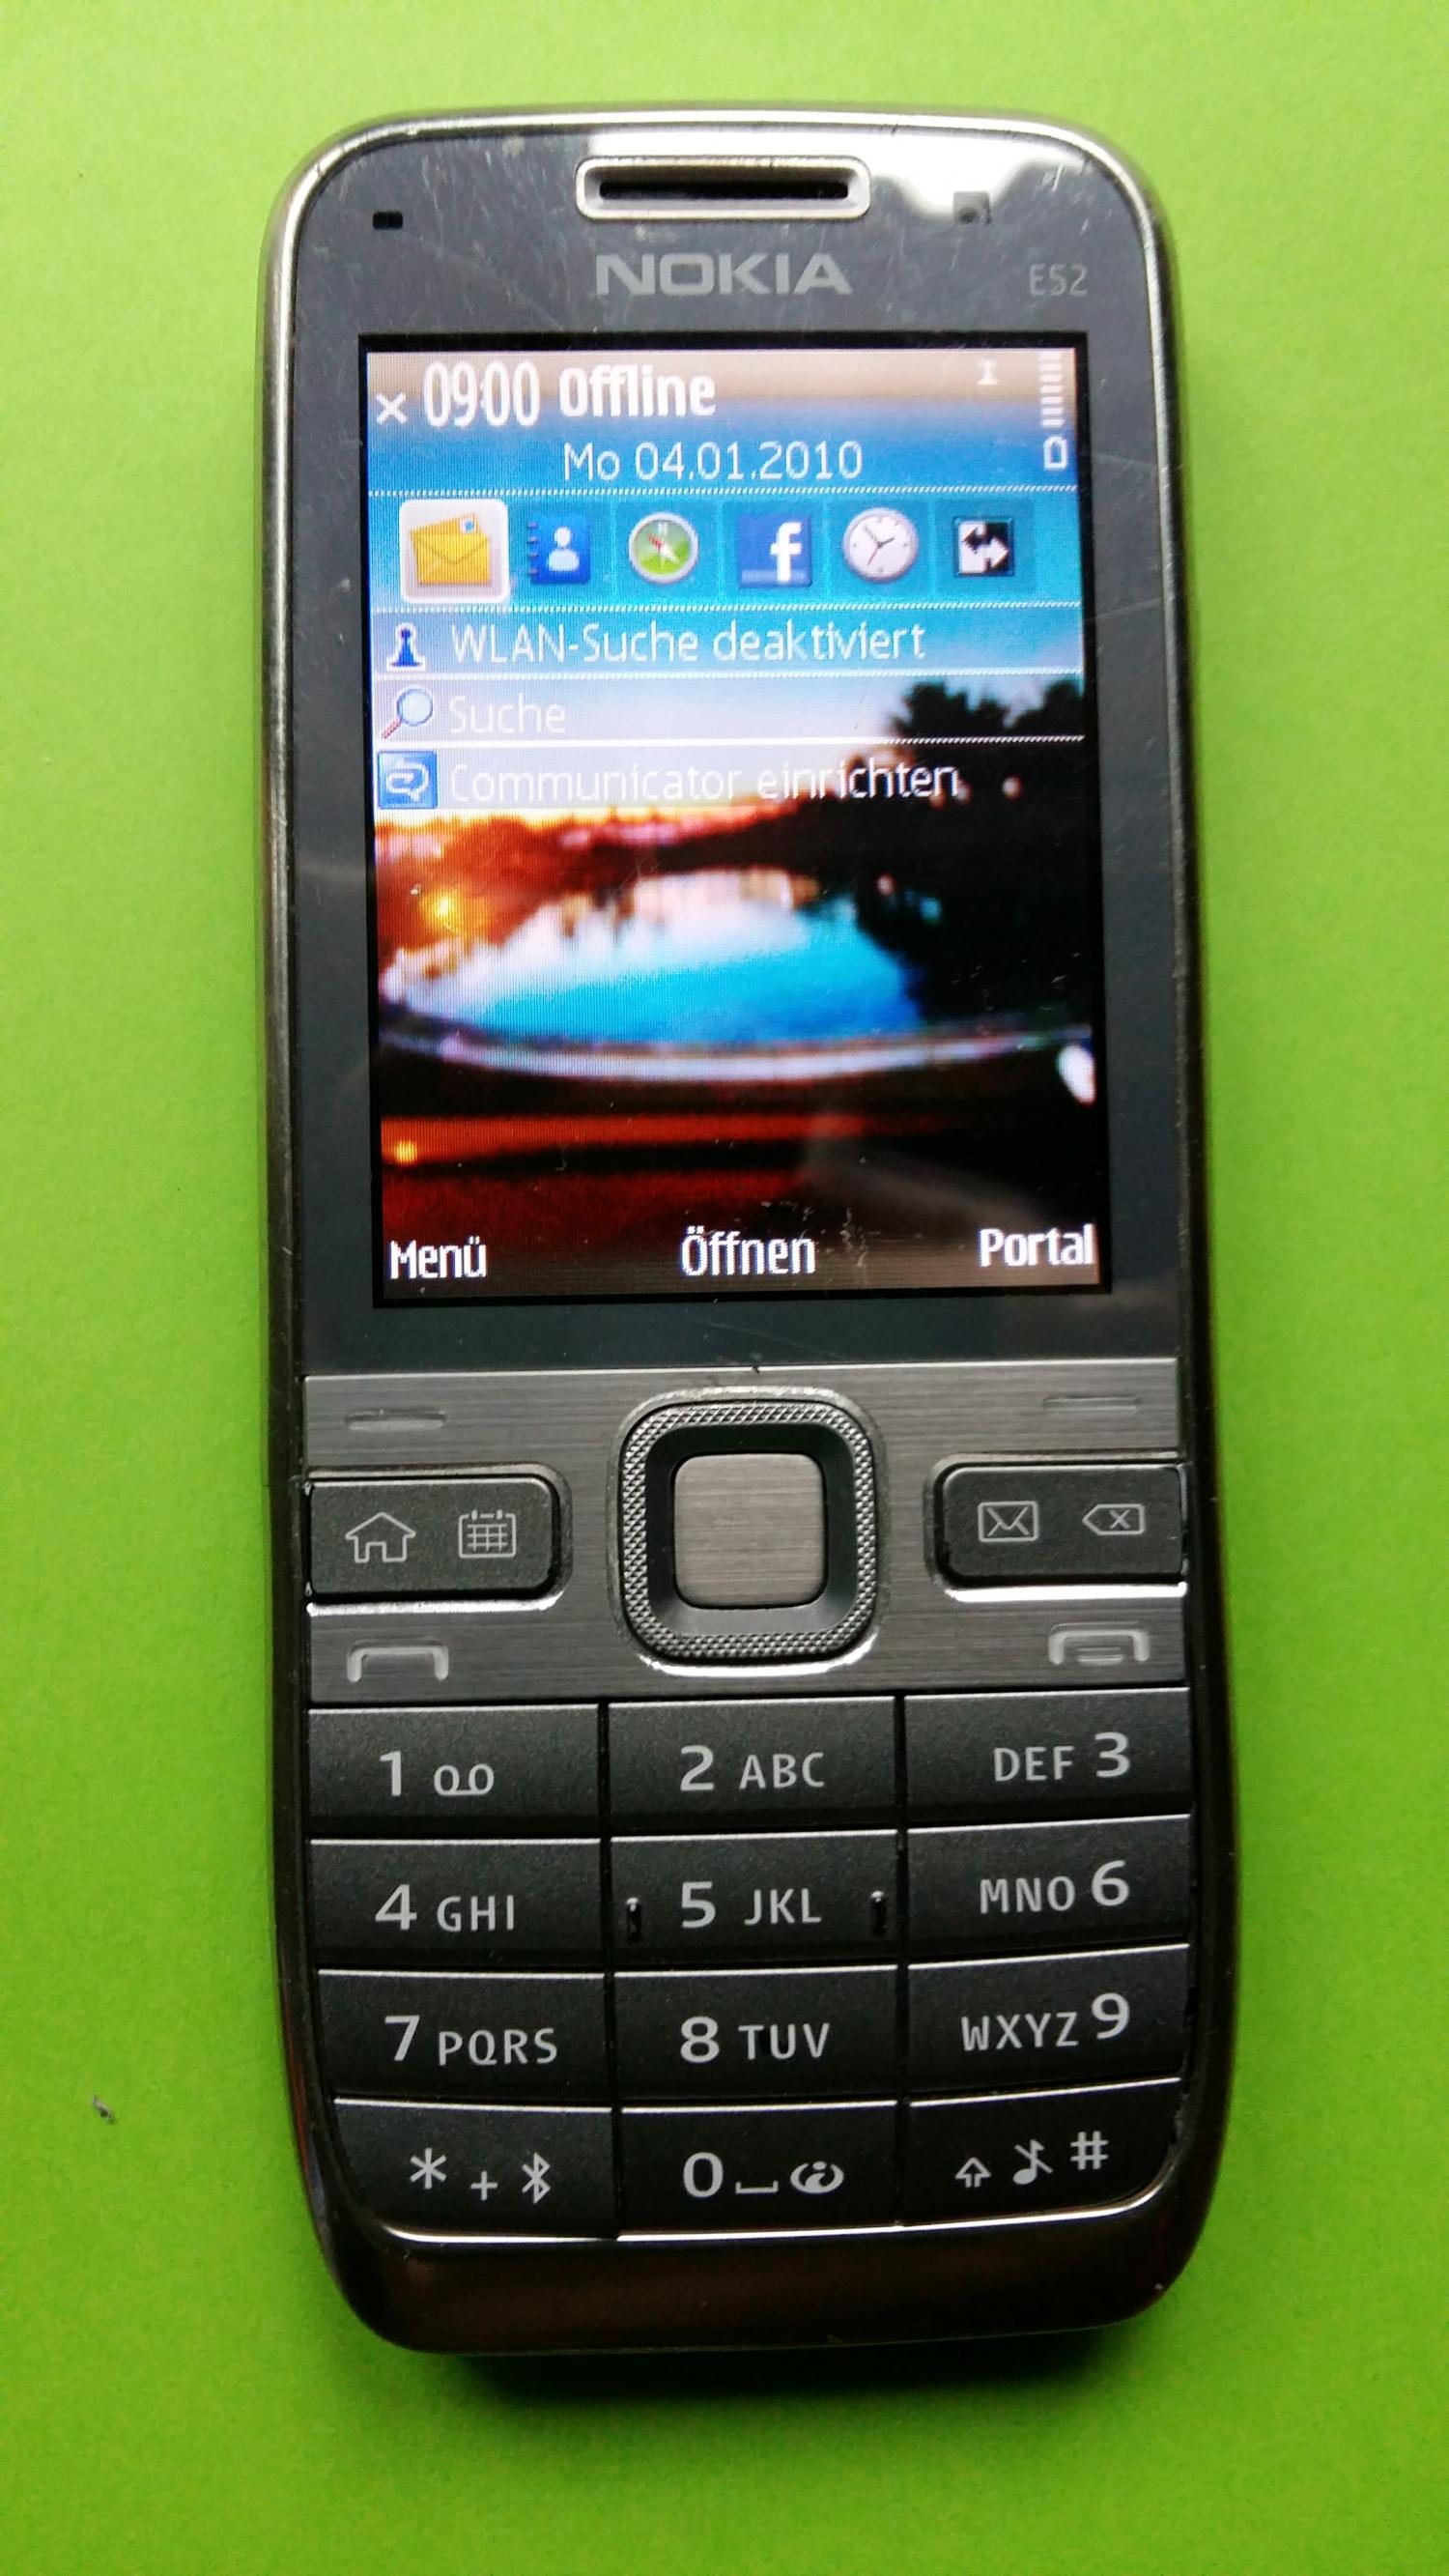 image-7339168-Nokia E52-1 (1)1.jpg